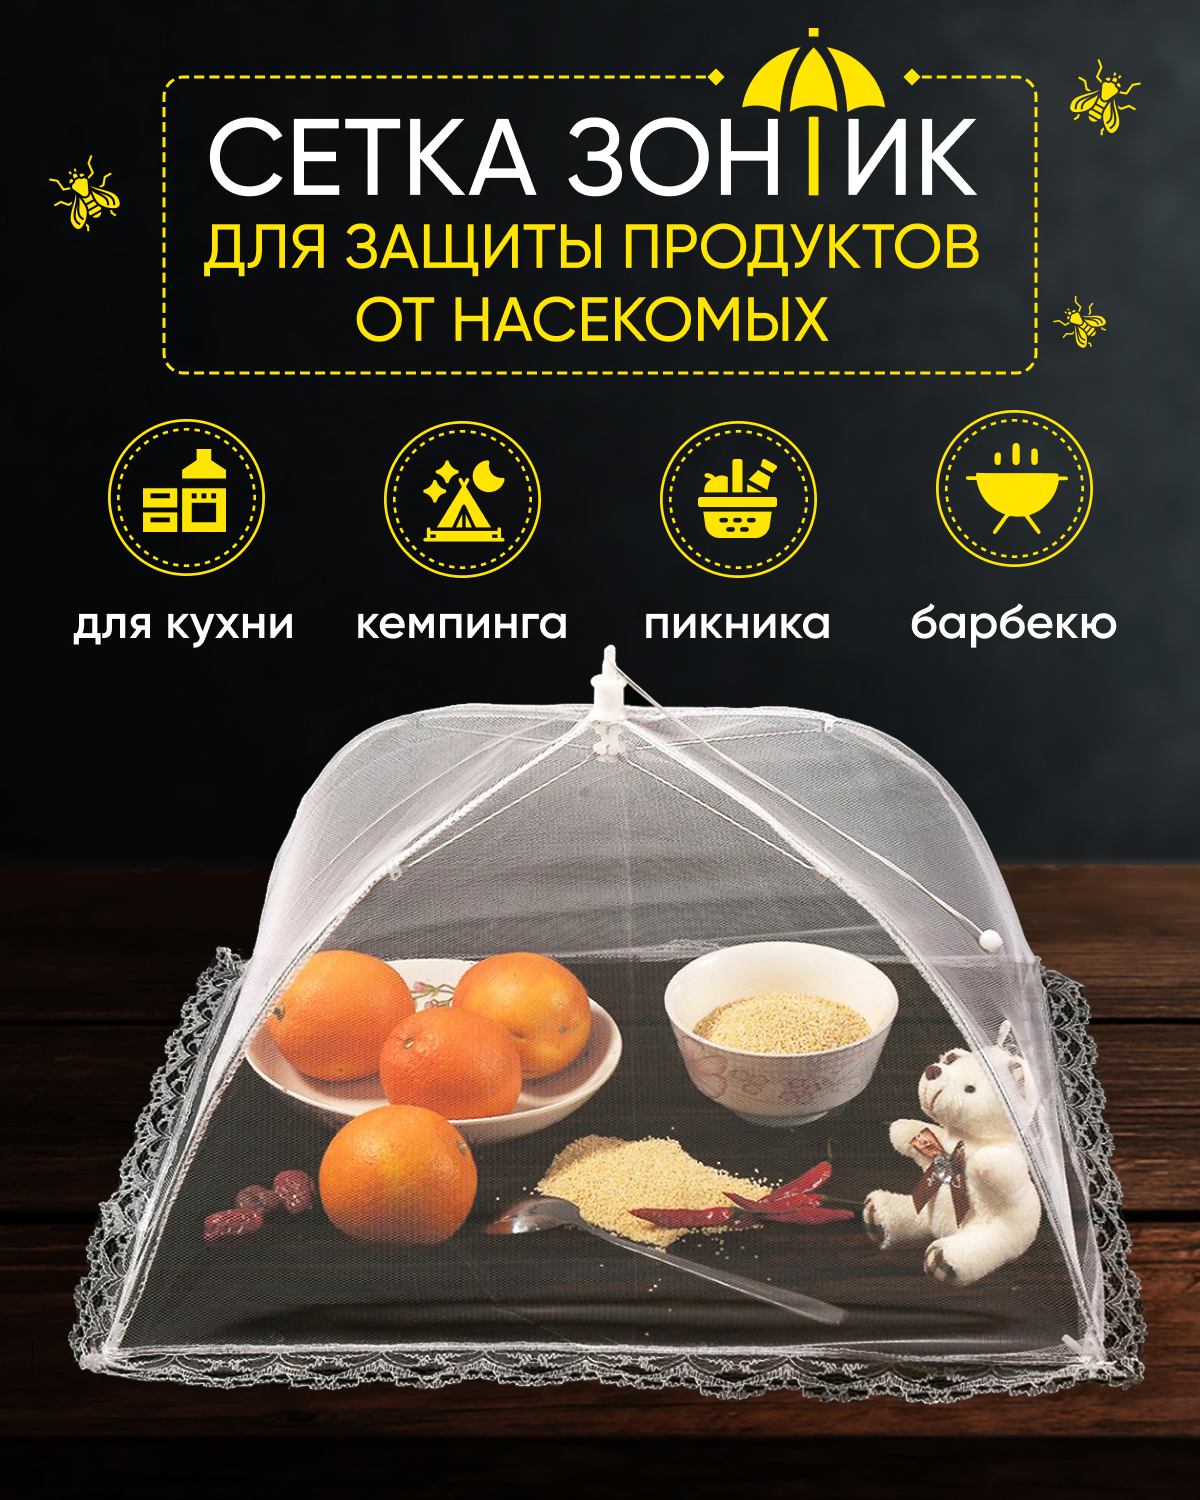 Раскладная сетка зонтик S-MAX для защиты продуктов и еды от насекомых 48 х 48 см белая